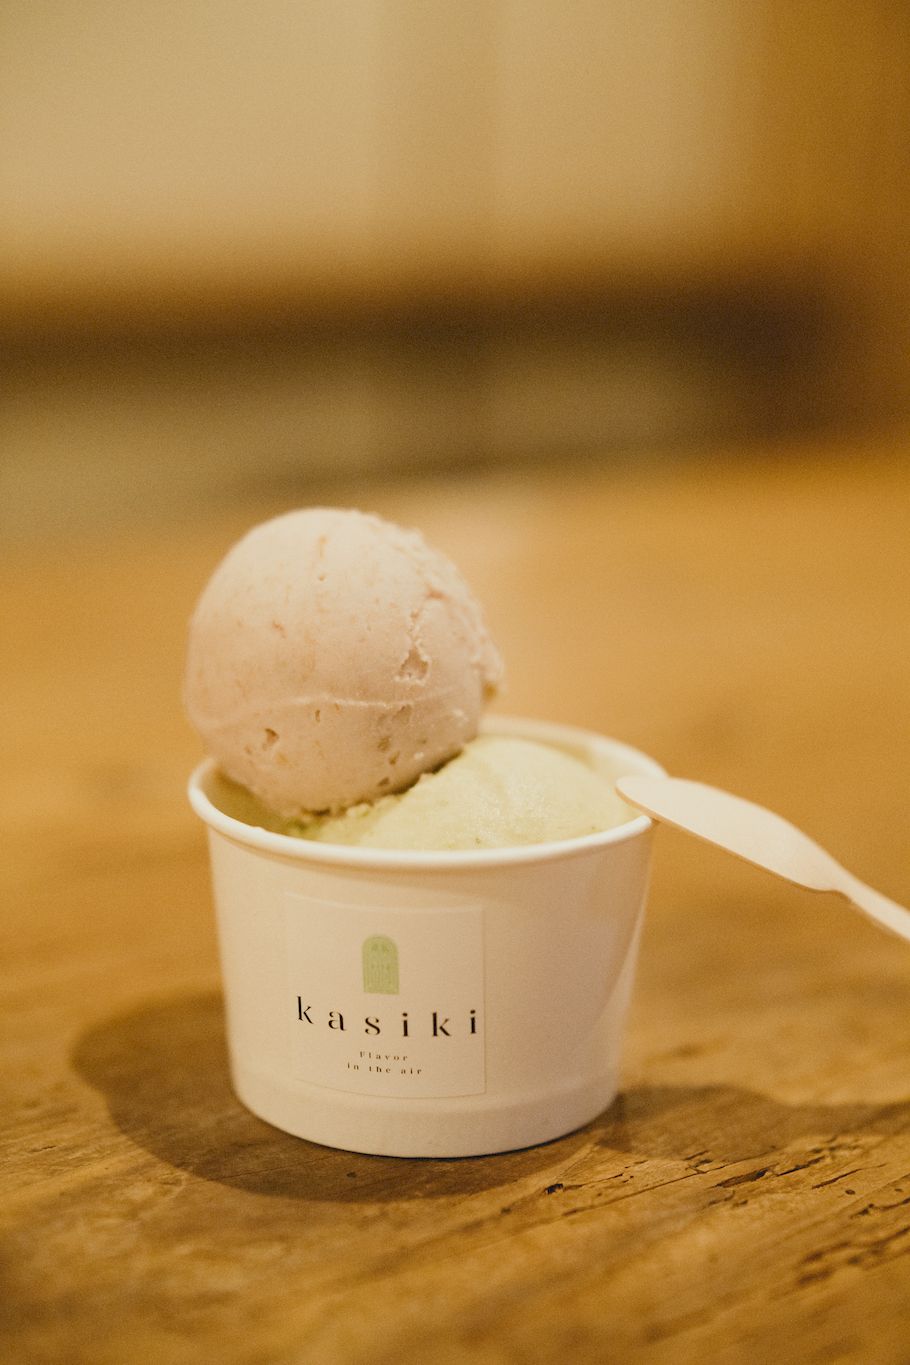 月に2,3回しか開かないアイス屋さん。モデル・名和風歌さんが一度は食べたかった「kasiki」、ハーブやスパイス香るアイス。連載「#ふうかとあいす」